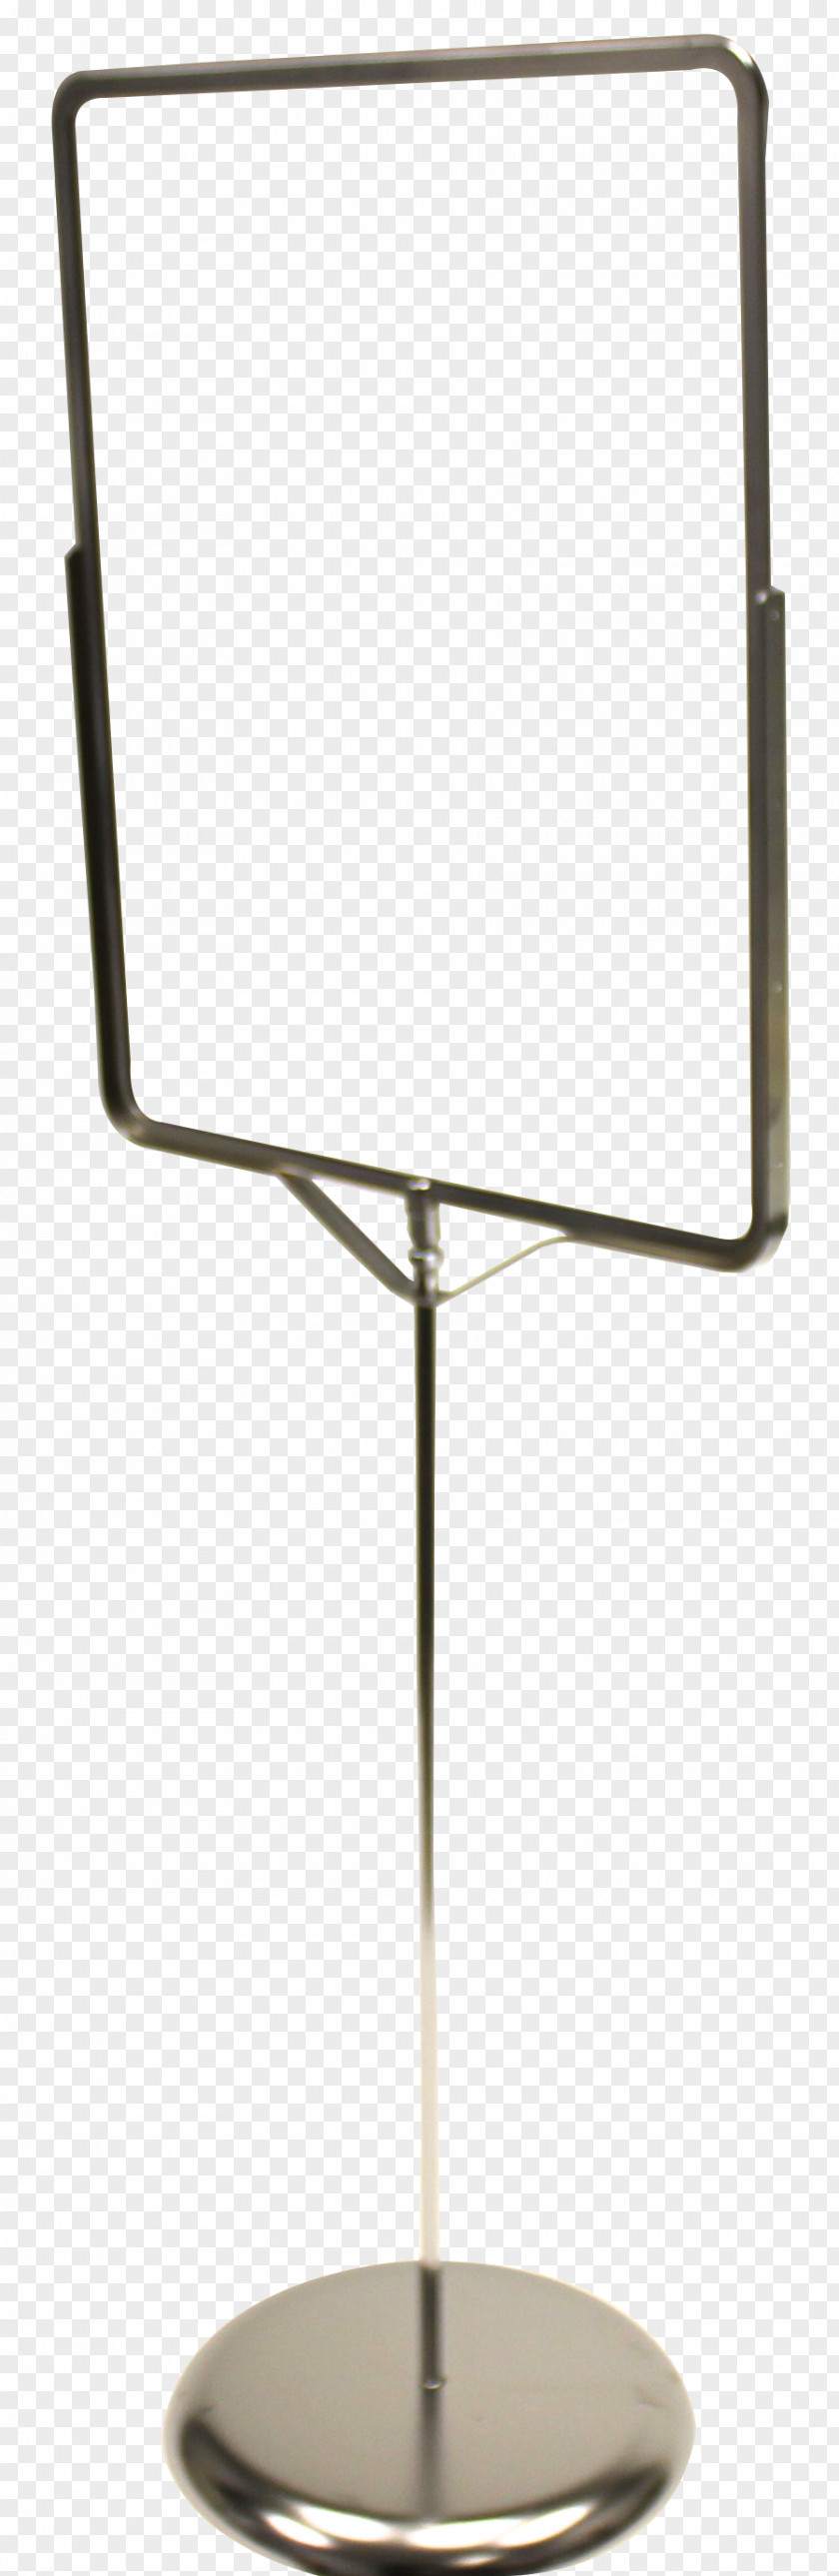 Food Display Angle Chair PNG